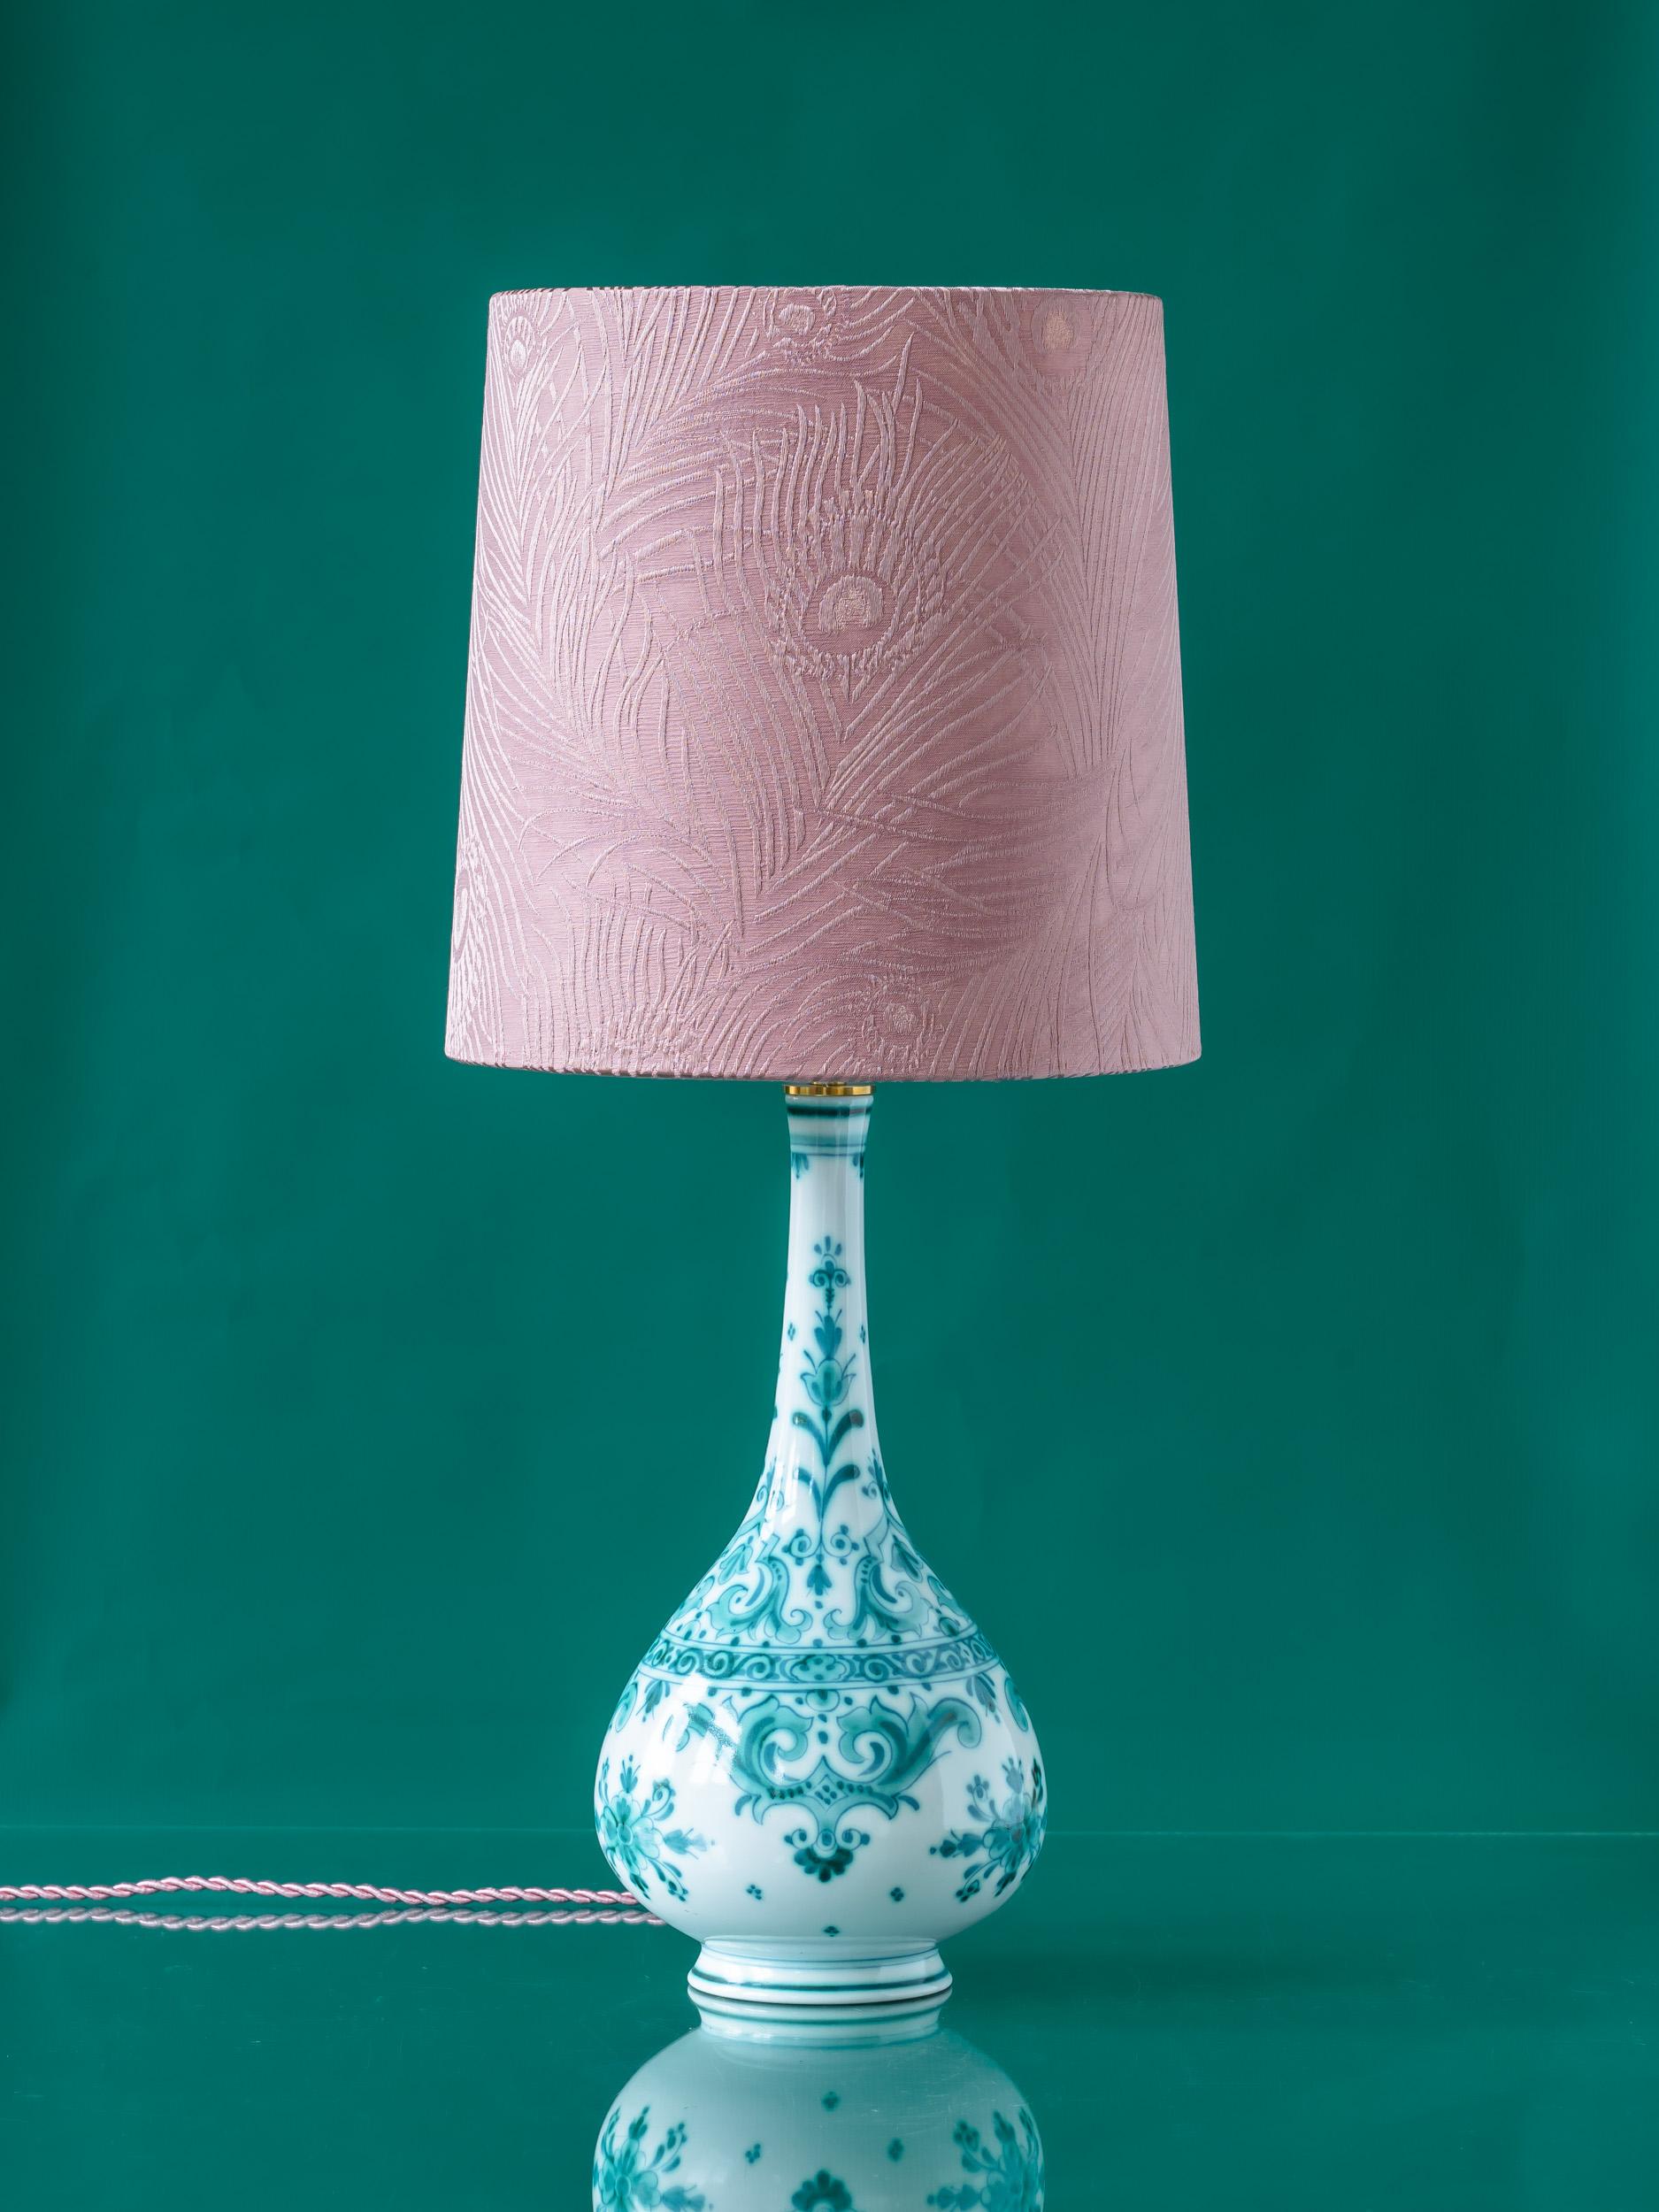 Wir präsentieren Athena, eine einzigartige Lampe, die in sorgfältiger Handarbeit aus einer alten Royal Delft (De Porceleyne Fles) Delvert Vase gefertigt wurde. Die Delvert-Serie, eine Verschmelzung des französischen Begriffs für Grün (vert) und der